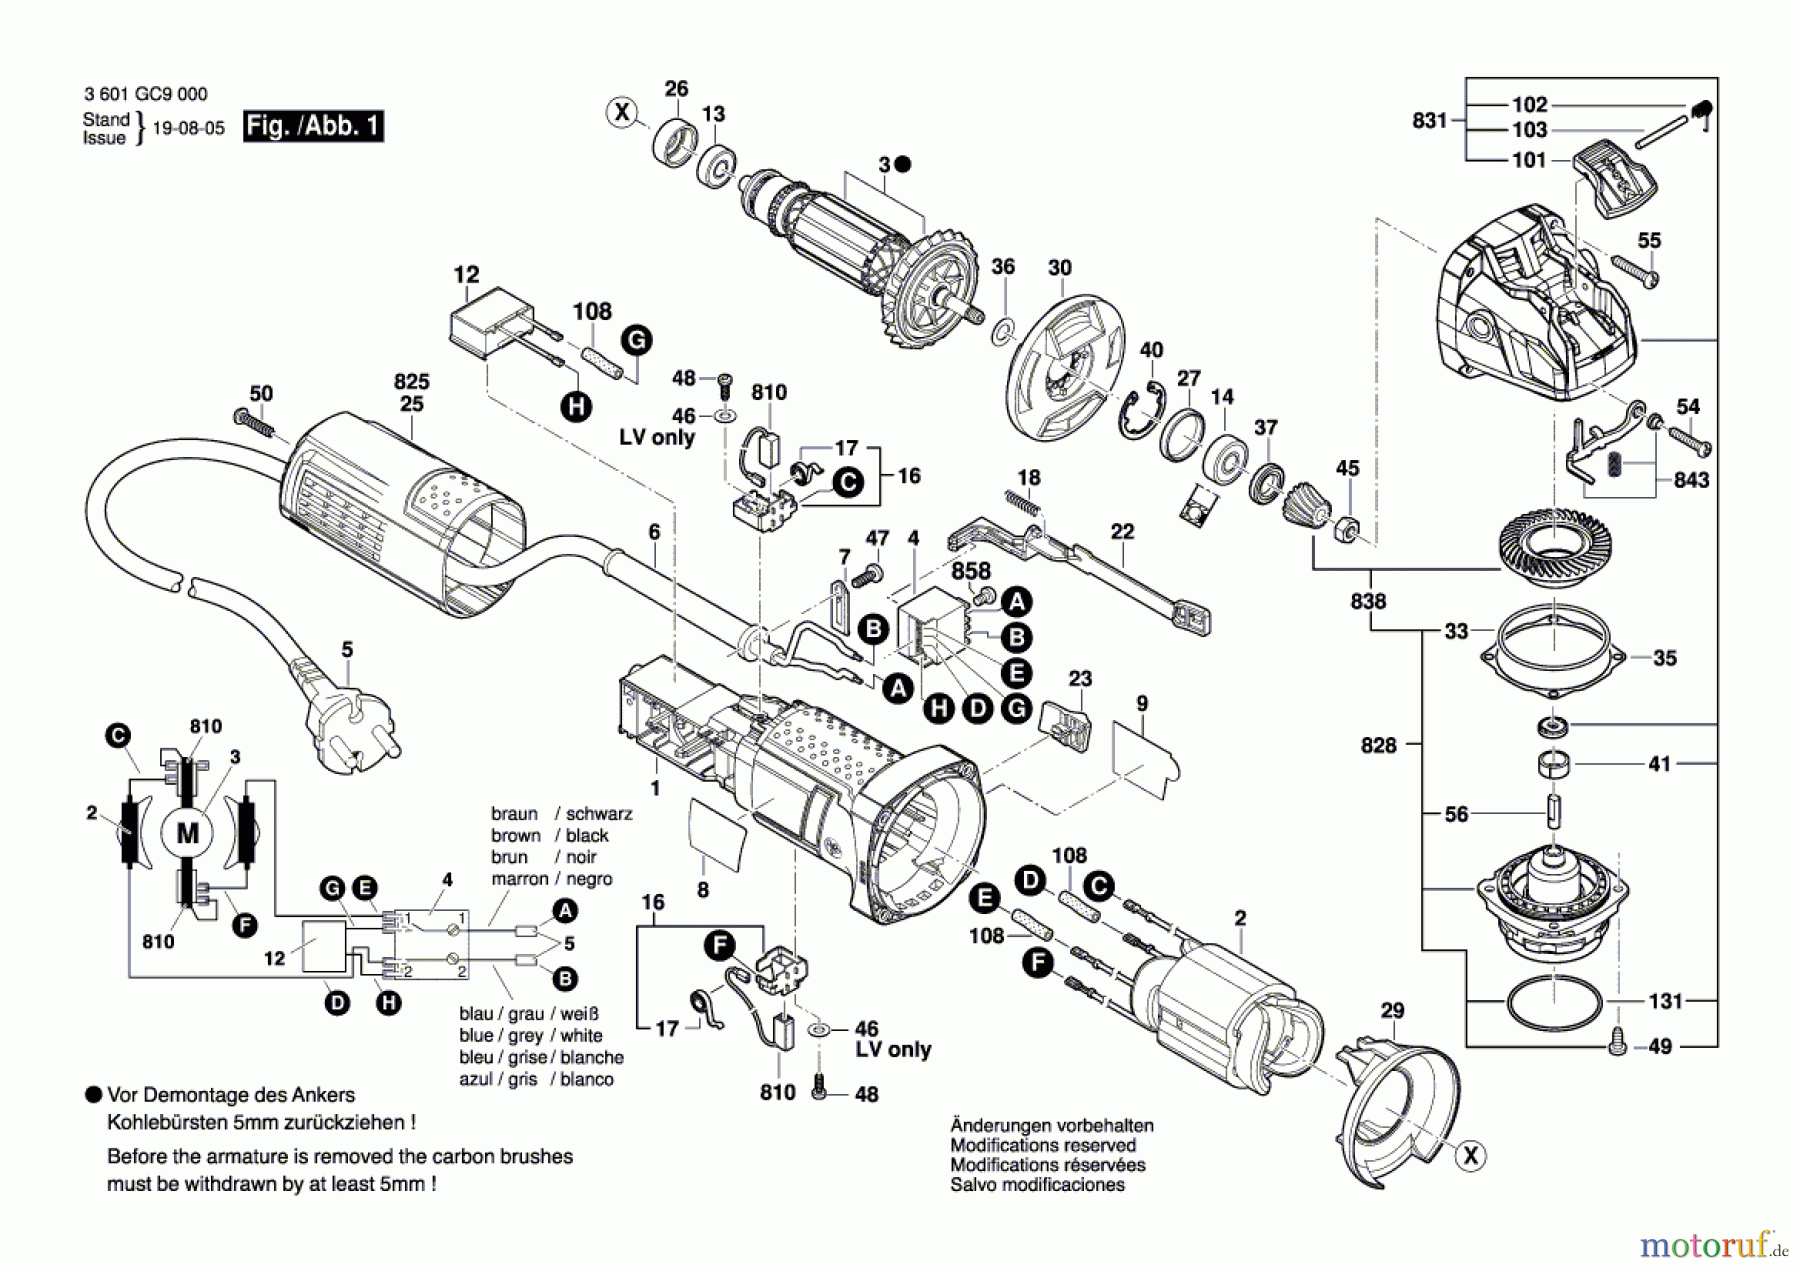  Bosch Werkzeug Winkelschleifer GWX 750-115 Seite 1